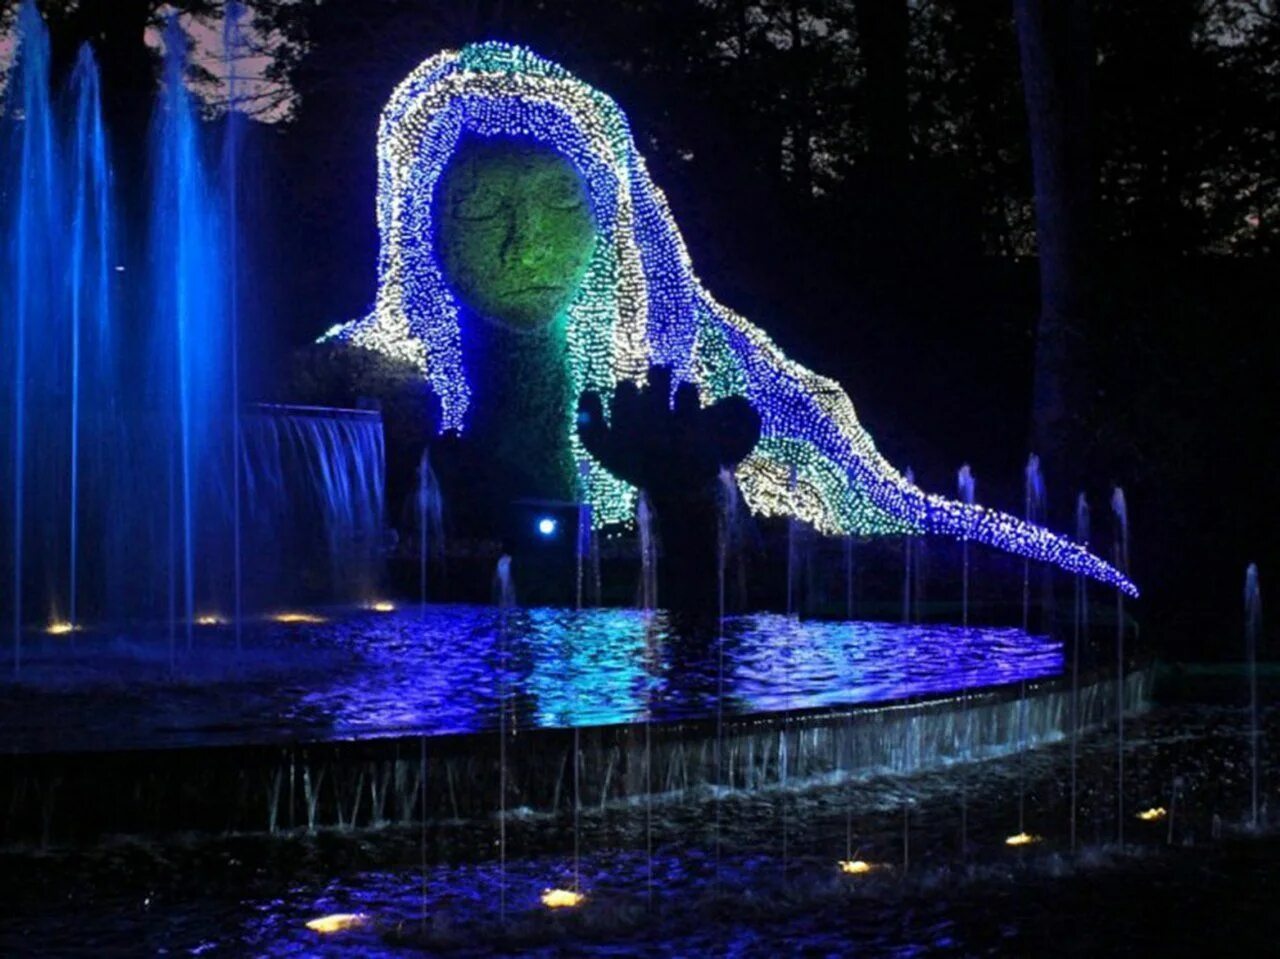 Атланта свет. Ботаникал Гарден Атланта. Атланта Ботанический сад. Ночь сад фонтан. Фиолетовый фонтан в саду ночью.